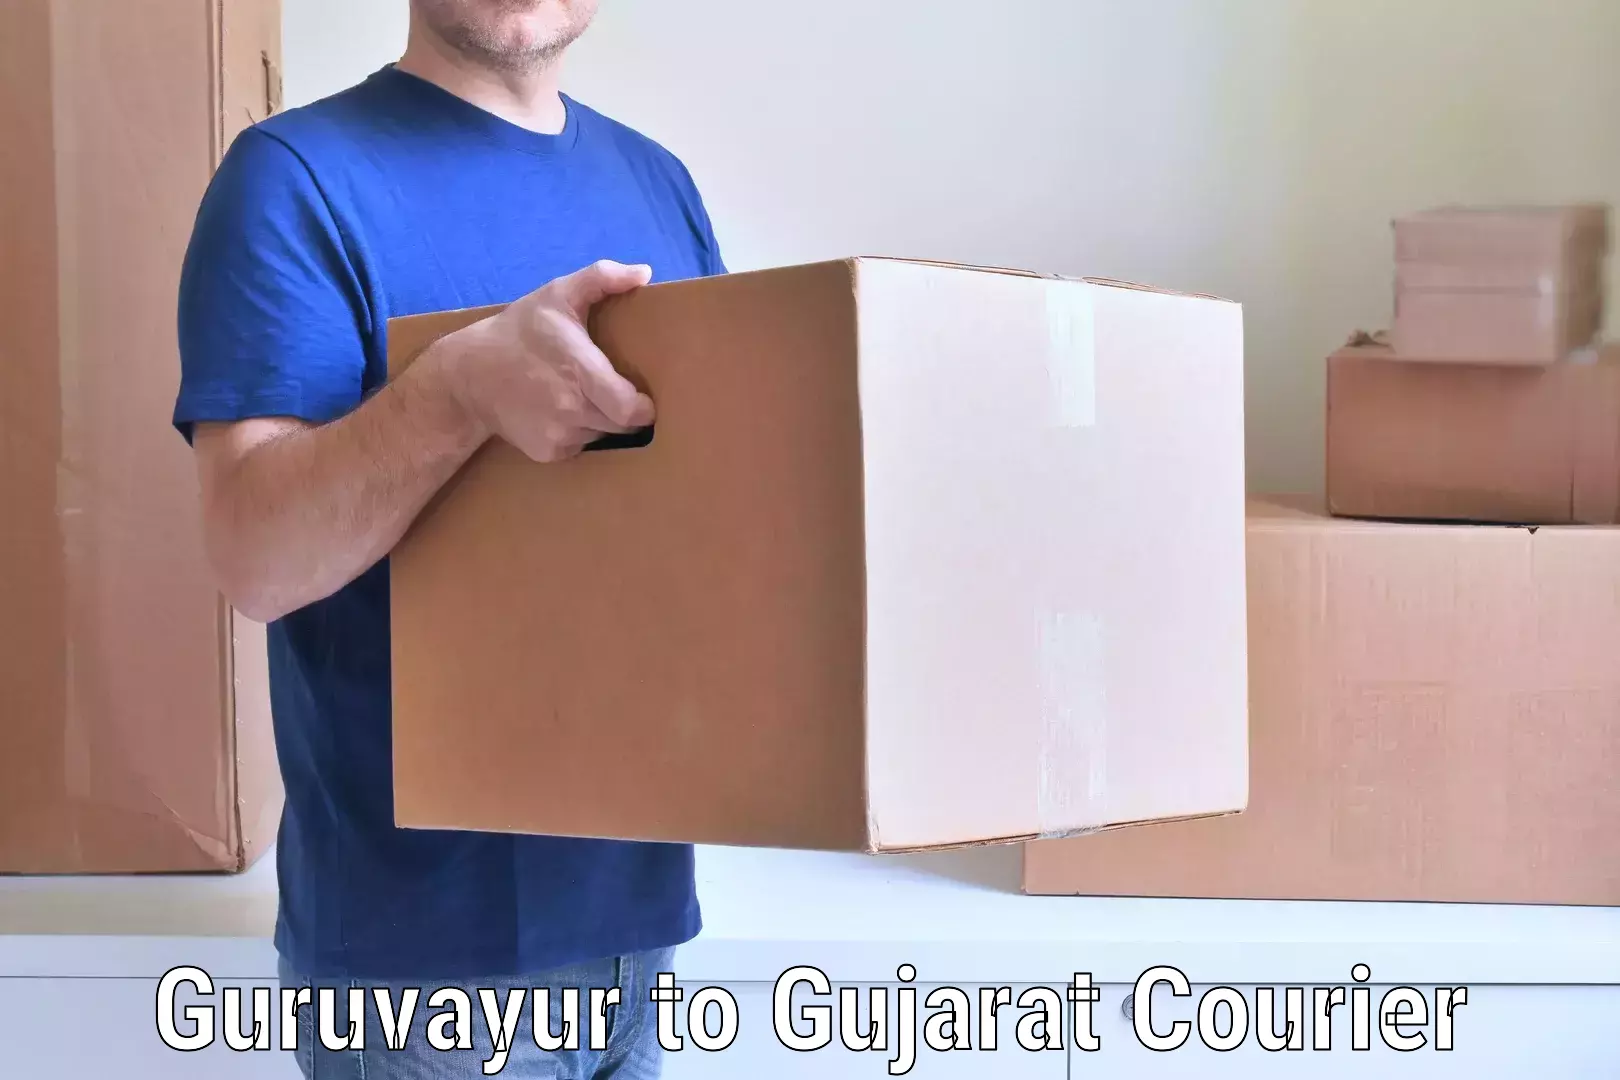 Professional furniture moving Guruvayur to Gujarat